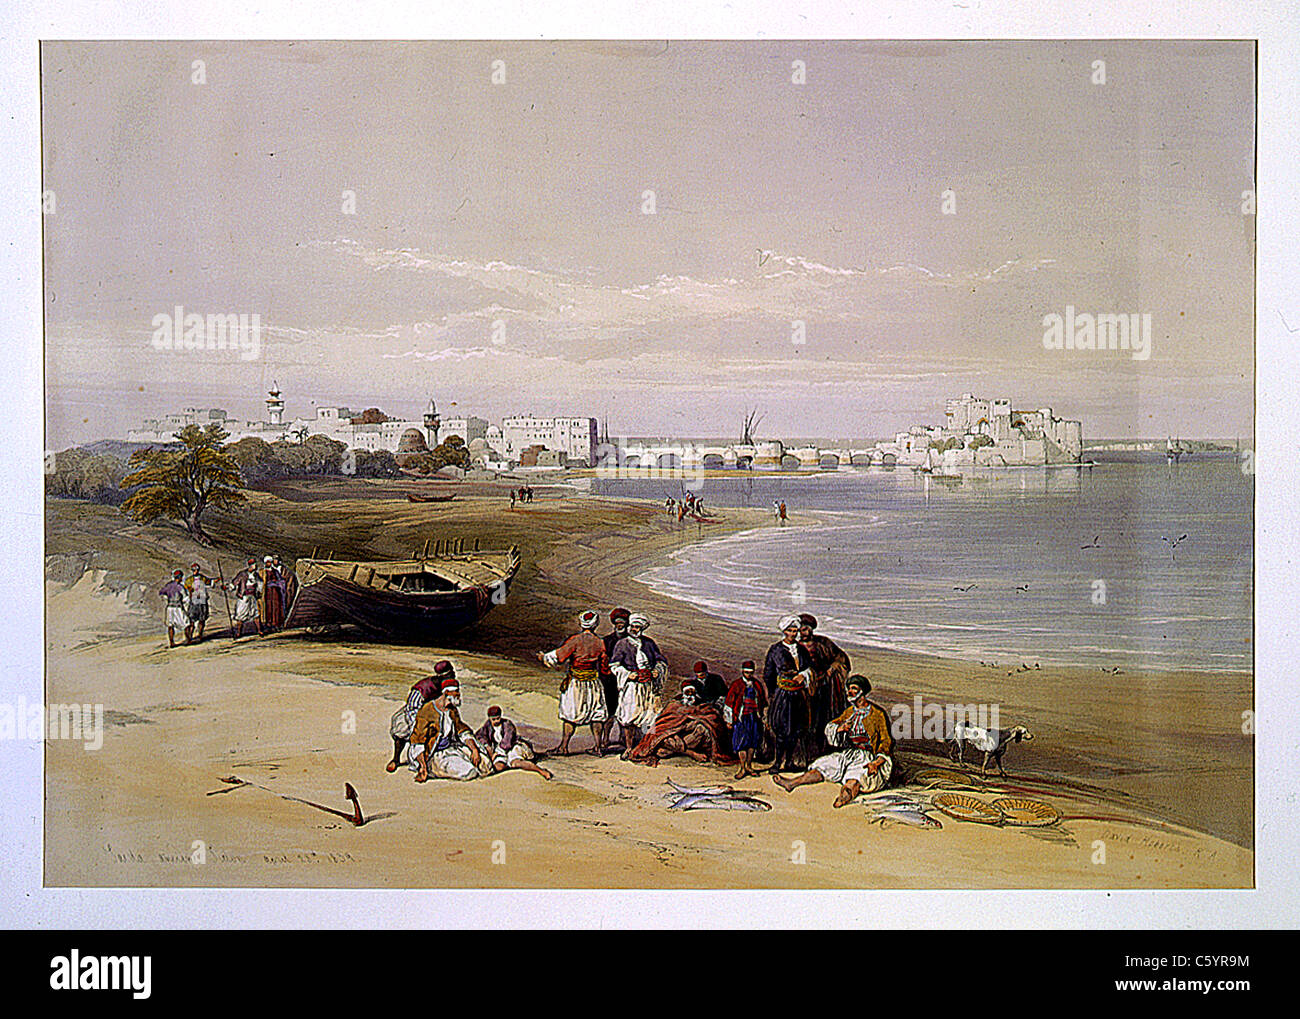 Sarda, Ancient Sidon 28 avril 1839, Louis Haghe / David Roberts 'la Terre Sainte, Syrie, Iduméa, Arabie, Egypte et Nubie' Banque D'Images